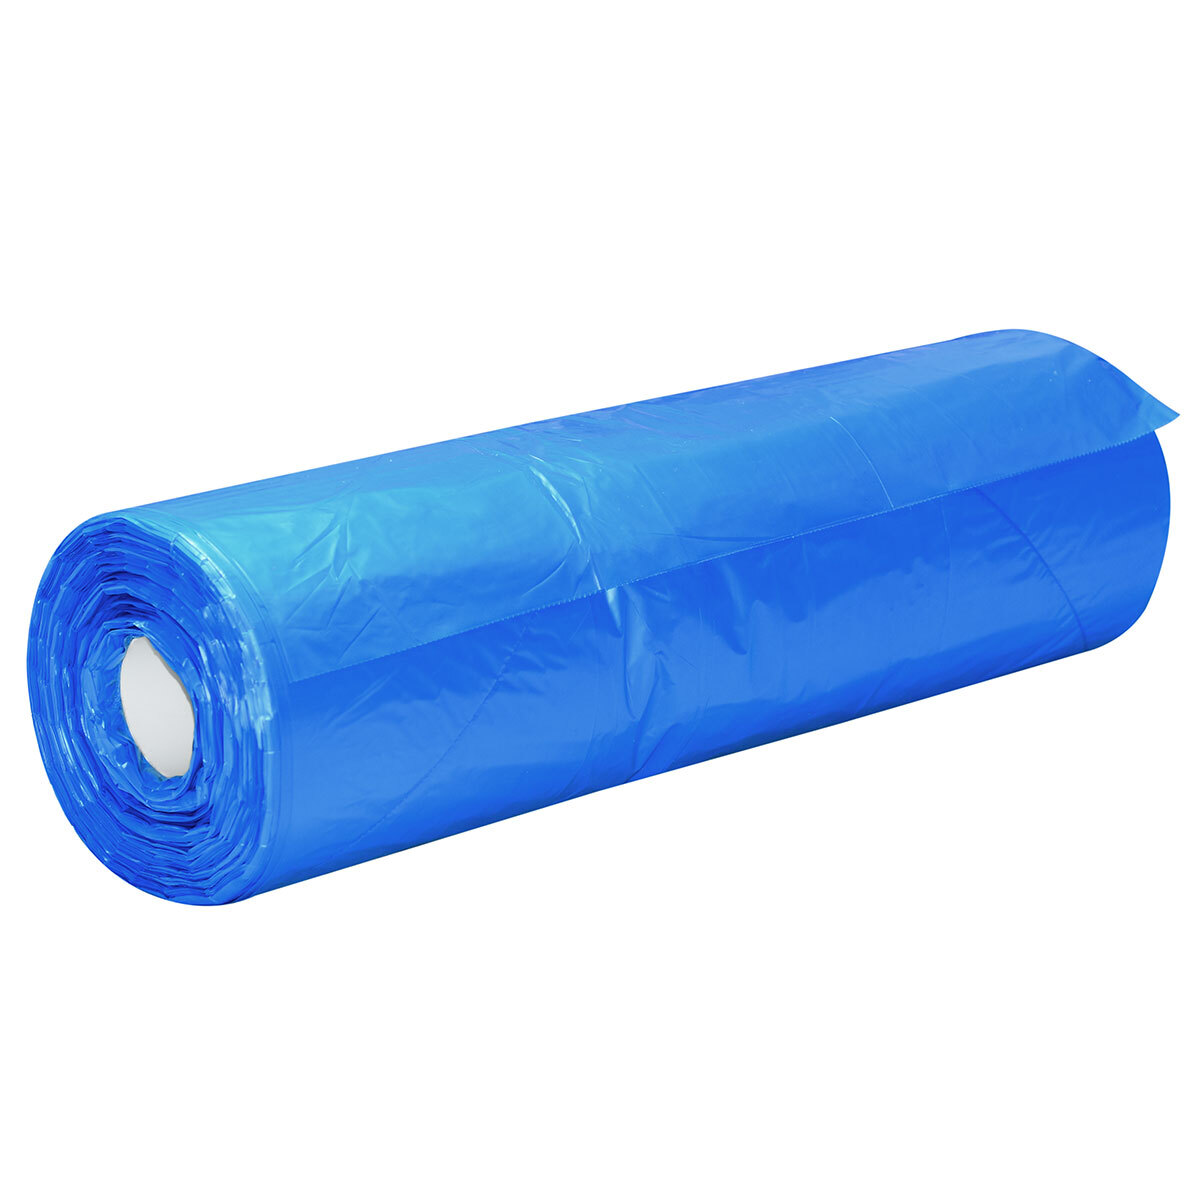 Carton Liner, 635+380x635mm x 16um - Blue 500/roll, 2 rolls/ctn